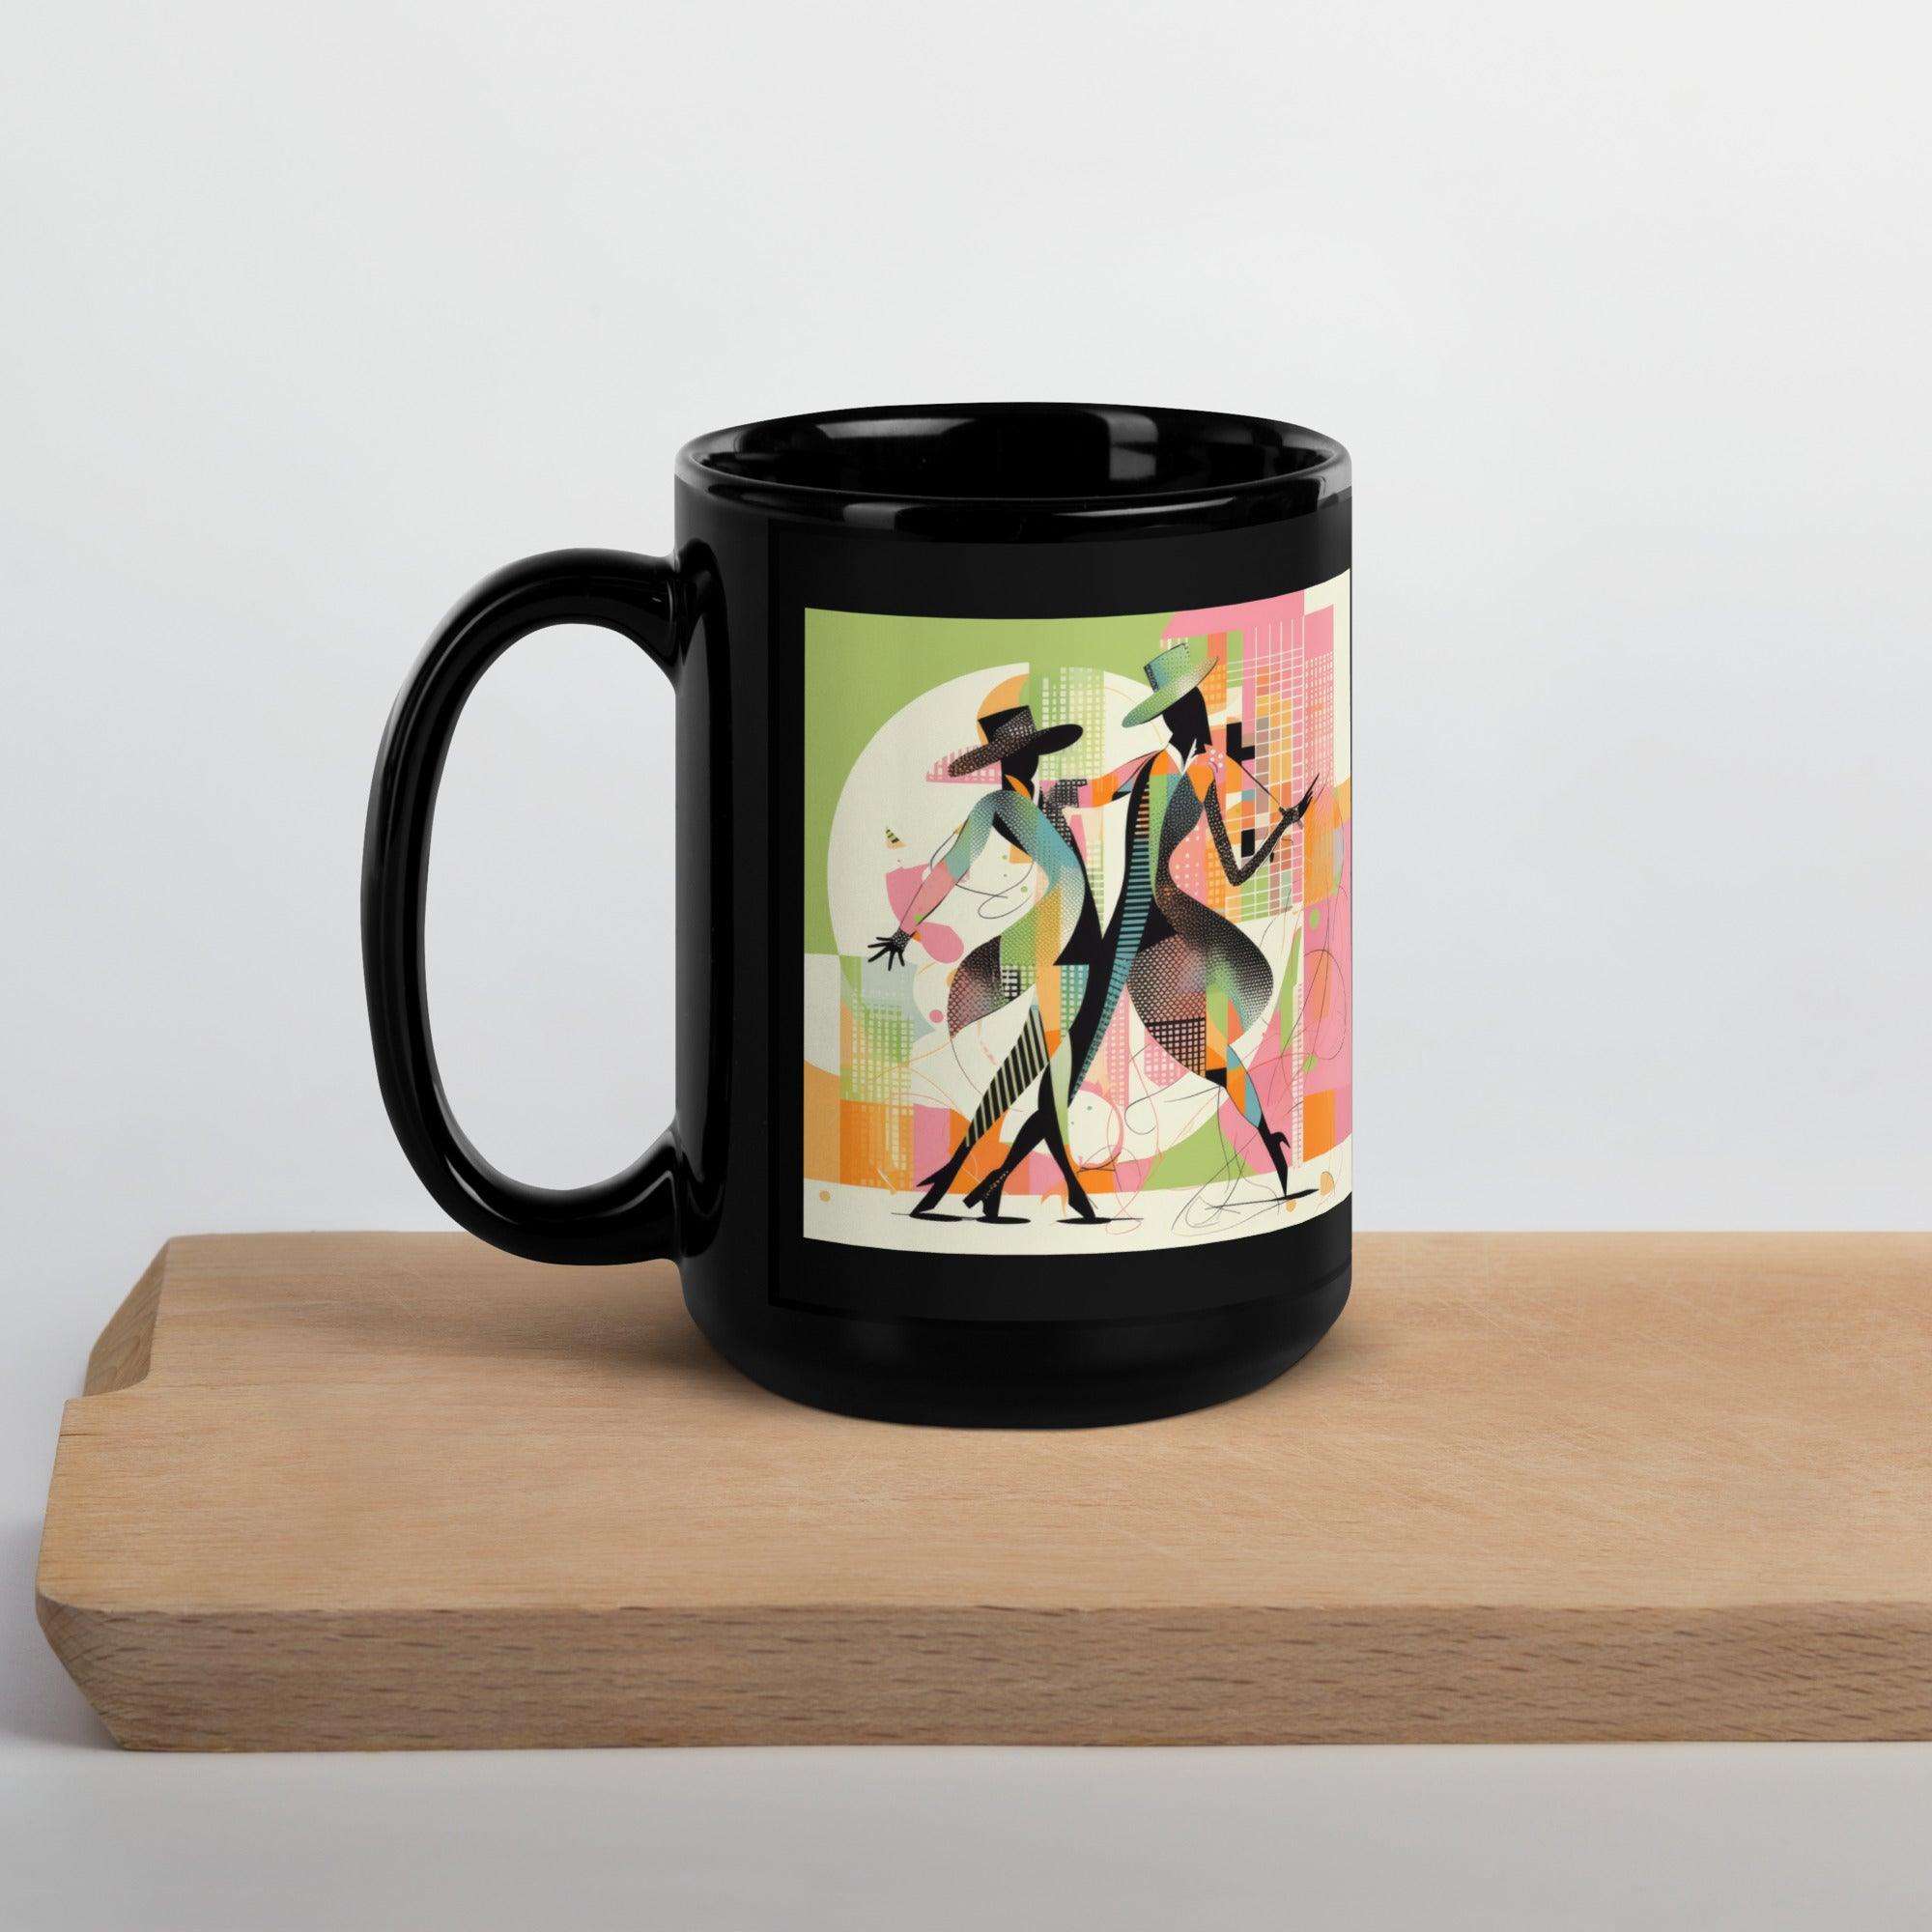 Stylish mug with black glossy finish and dance motif.